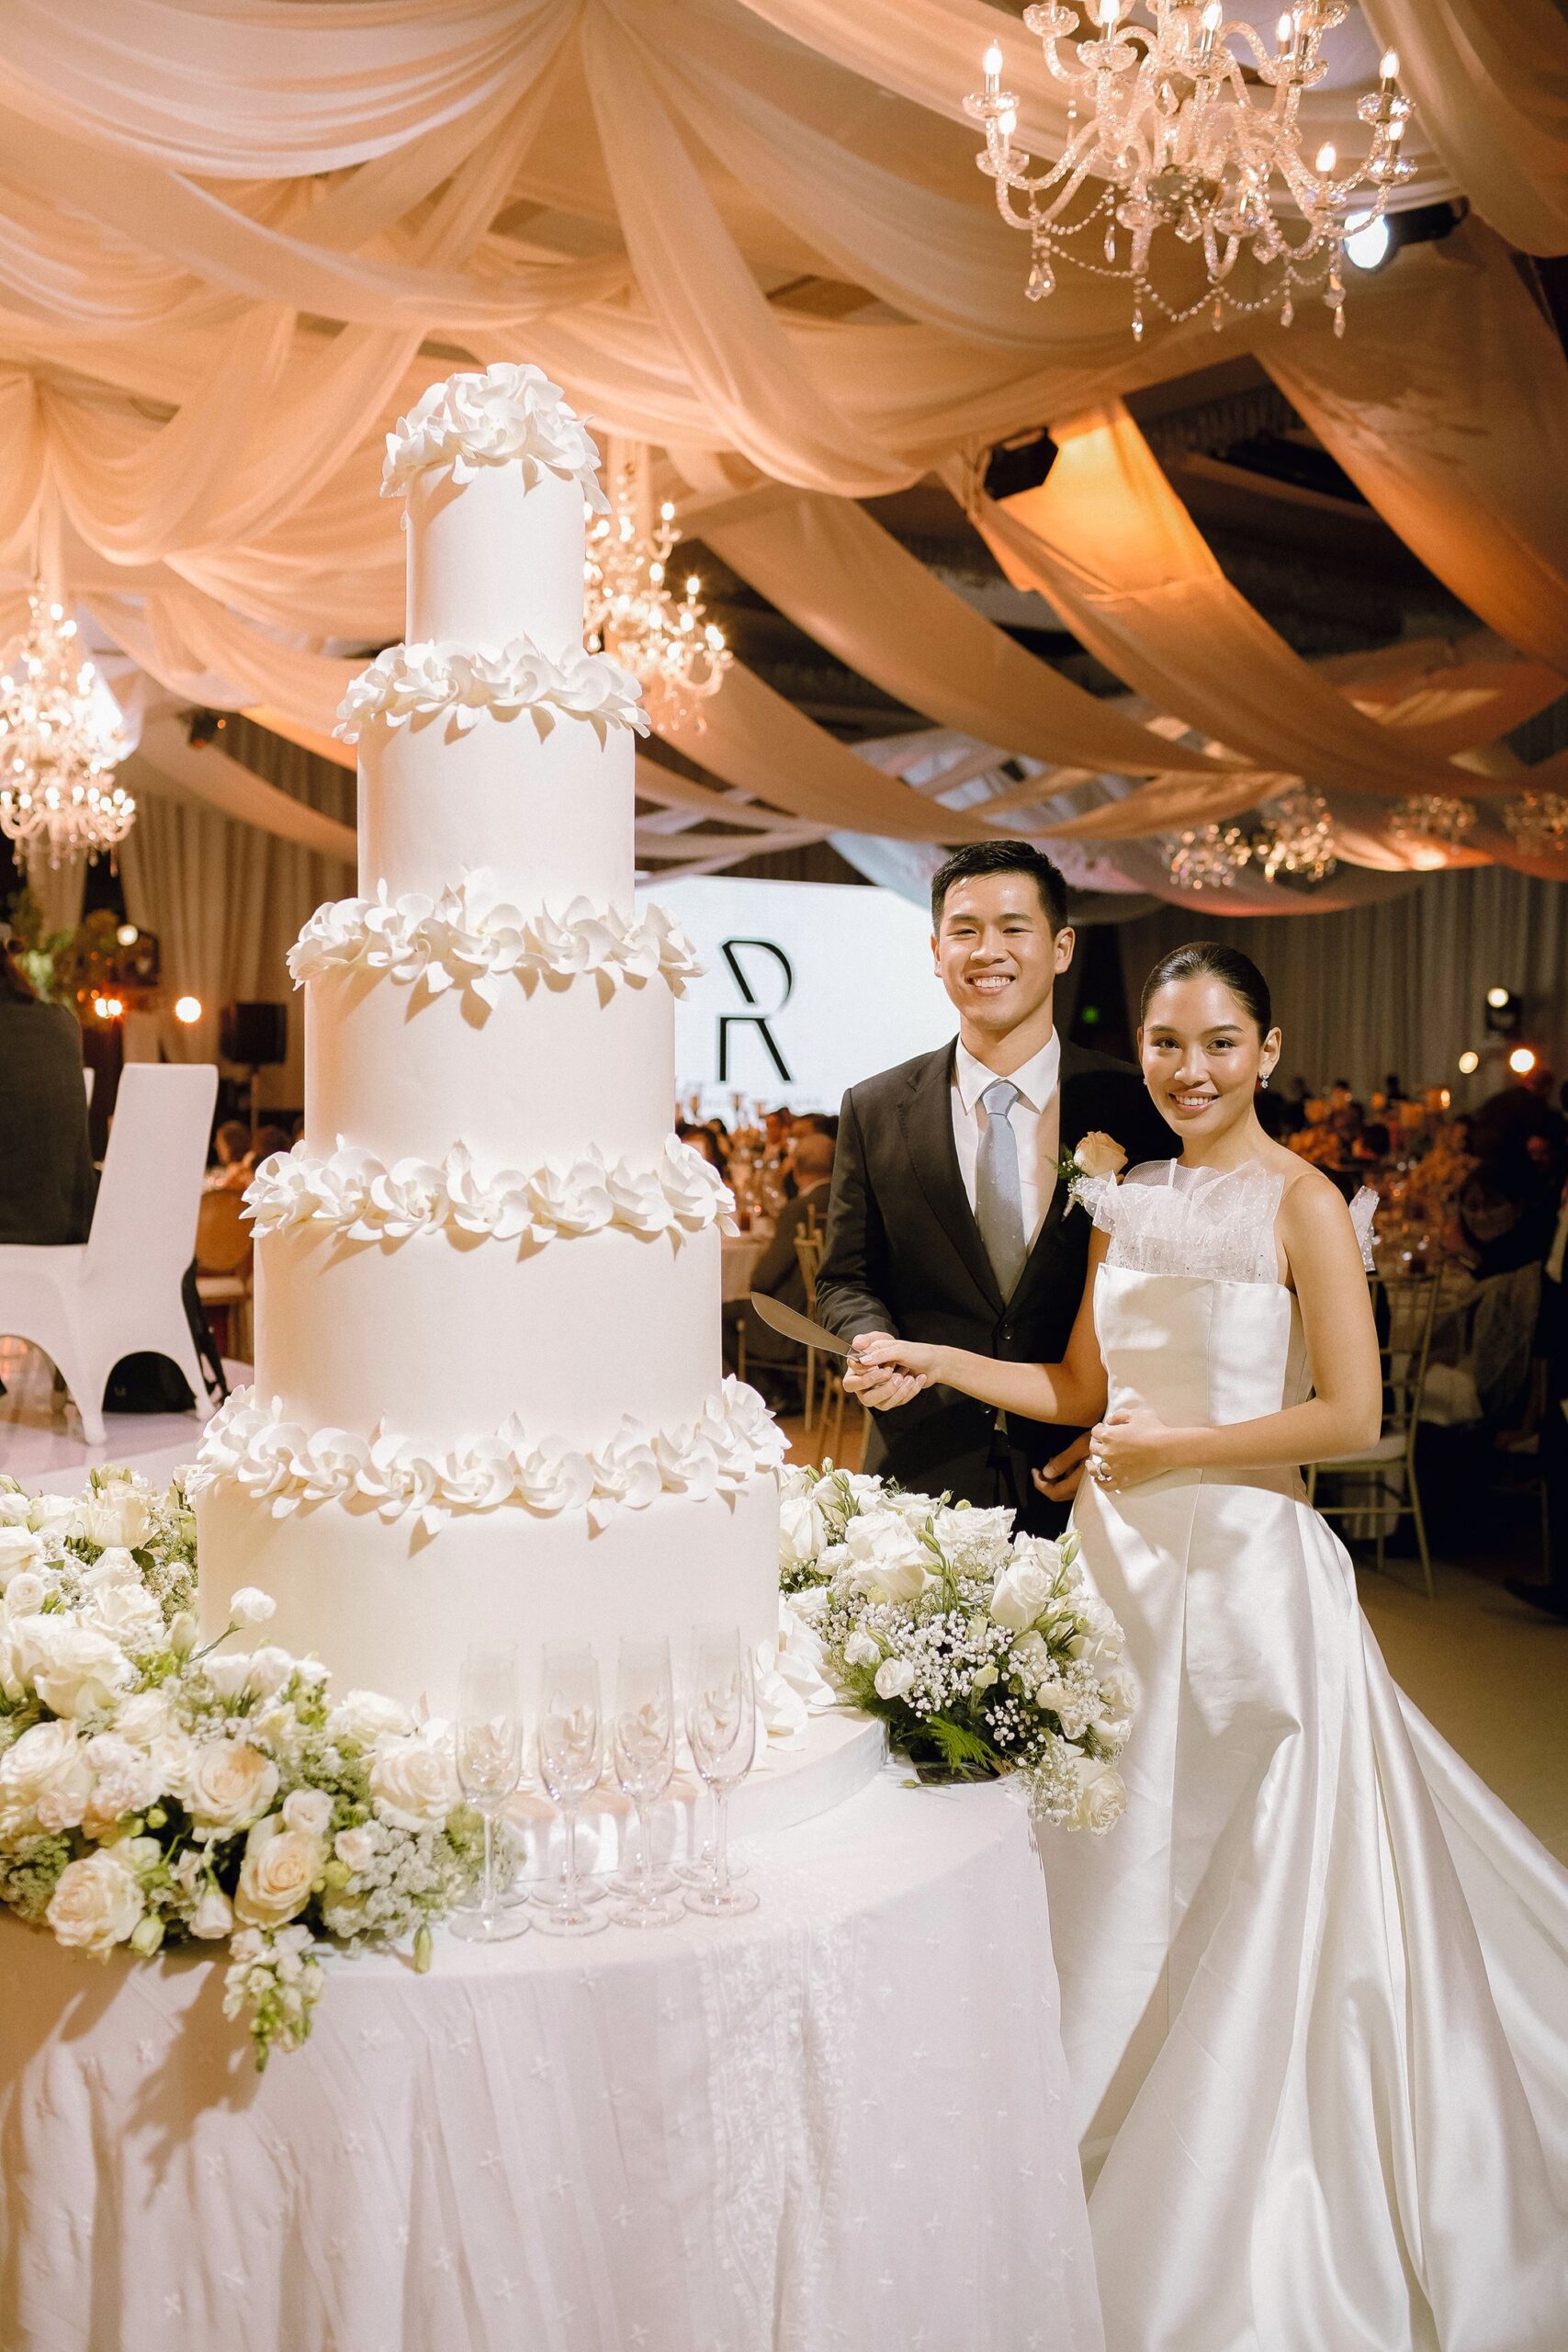 Richard Go and Ariana Coronel wedding cake